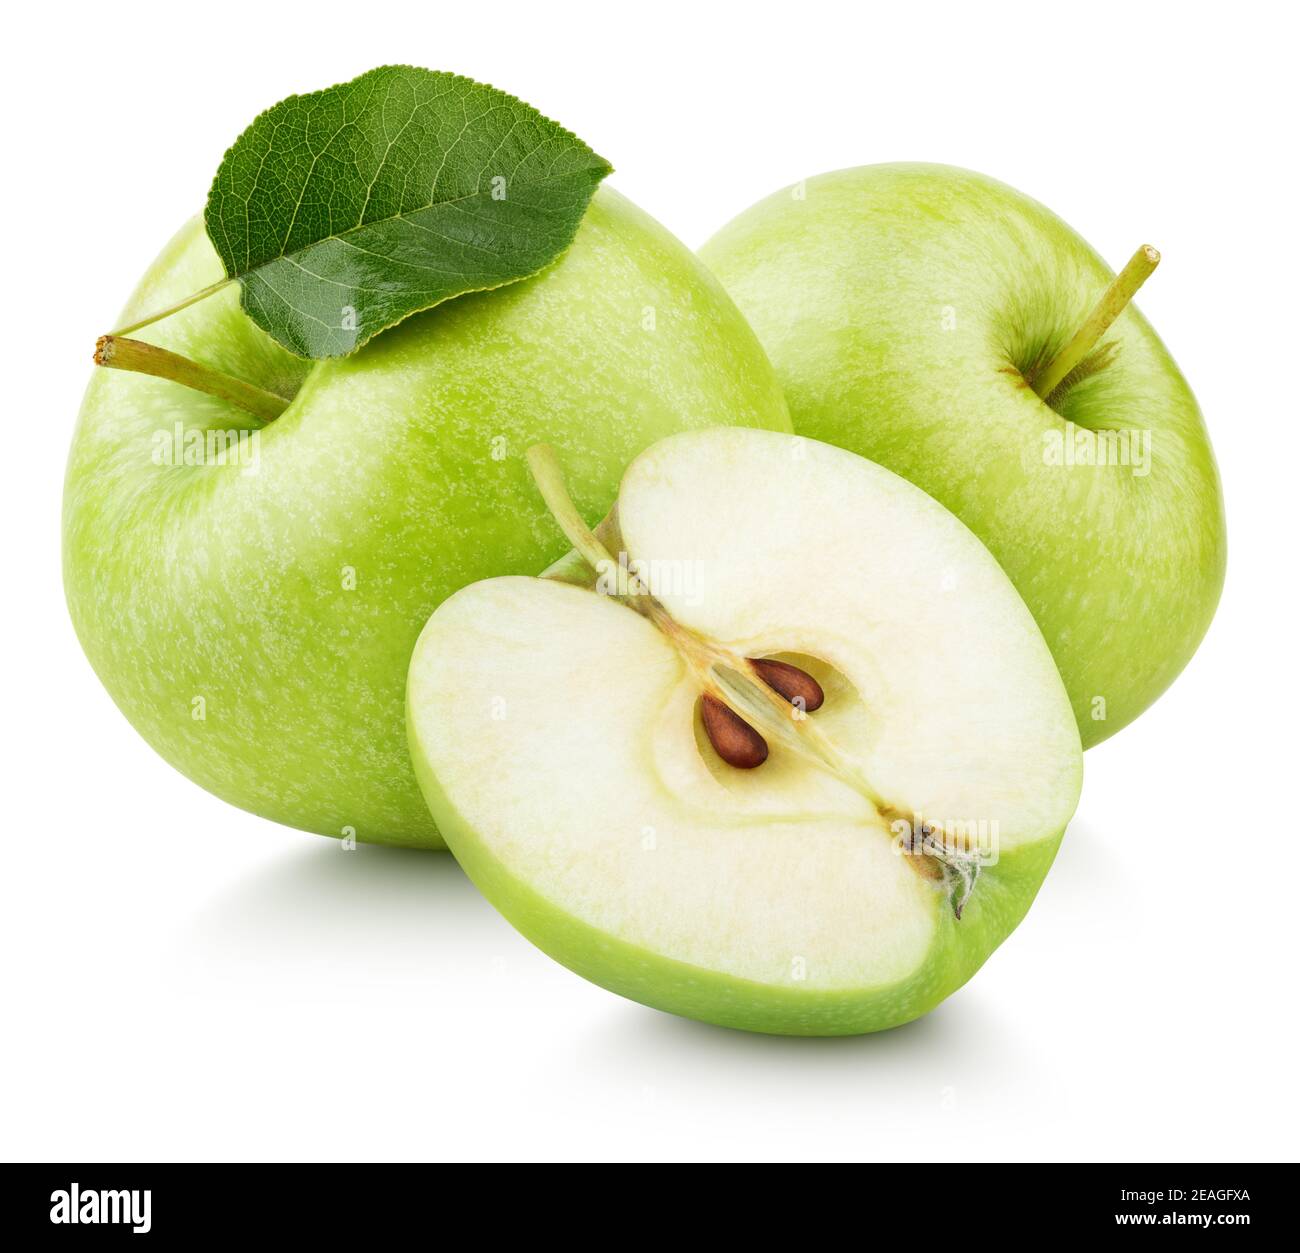 Gruppo di mele verdi mature con mezzo di mela e foglia verde isolato su sfondo bianco. Mele con percorso di taglio Foto Stock